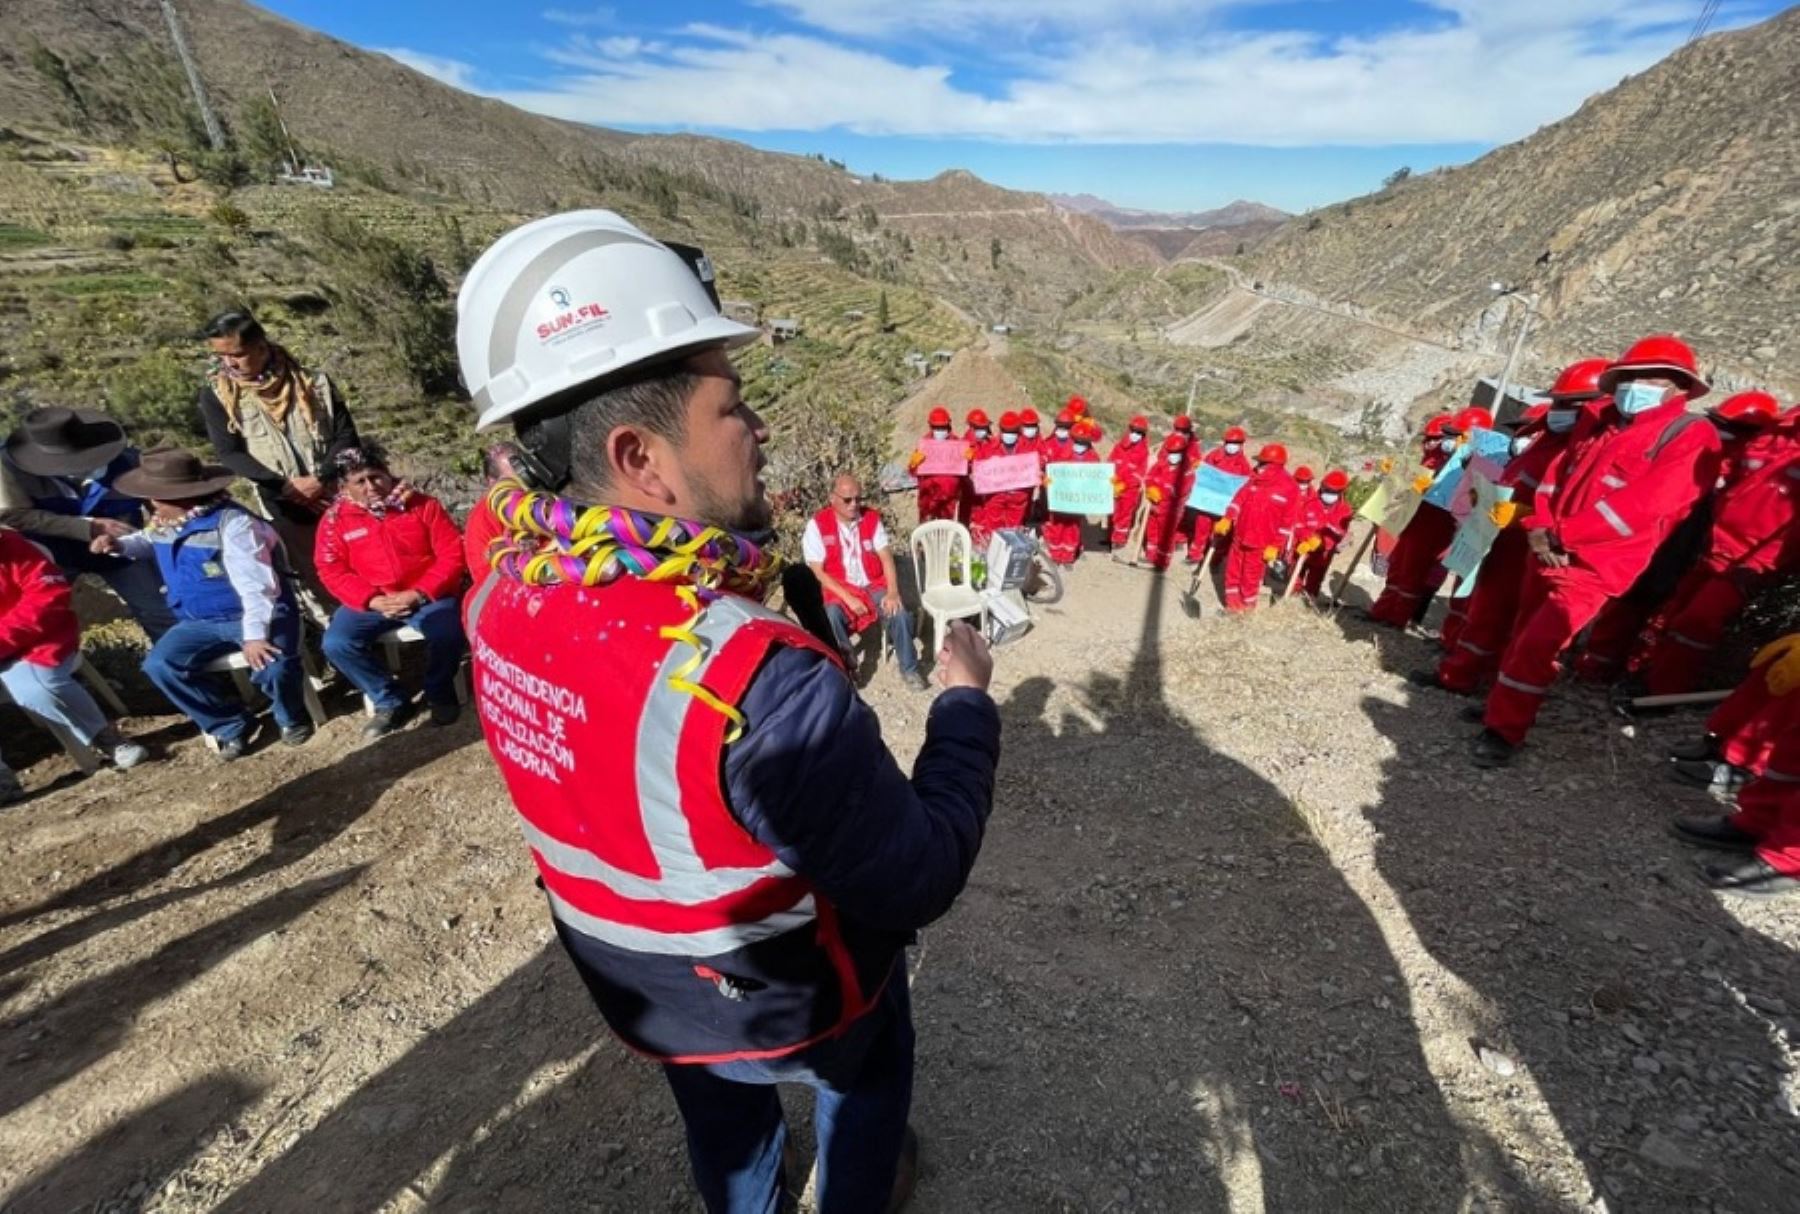 El superintendente de la Sunafil, Víctor Loyola, llegó a Tacna junto con el ministro de Trabajo y Promoción del Empleo, Juan Ramón Lira, para cumplir con una serie de actividades en beneficio de la población de esta región ubicada al sur del Perú.